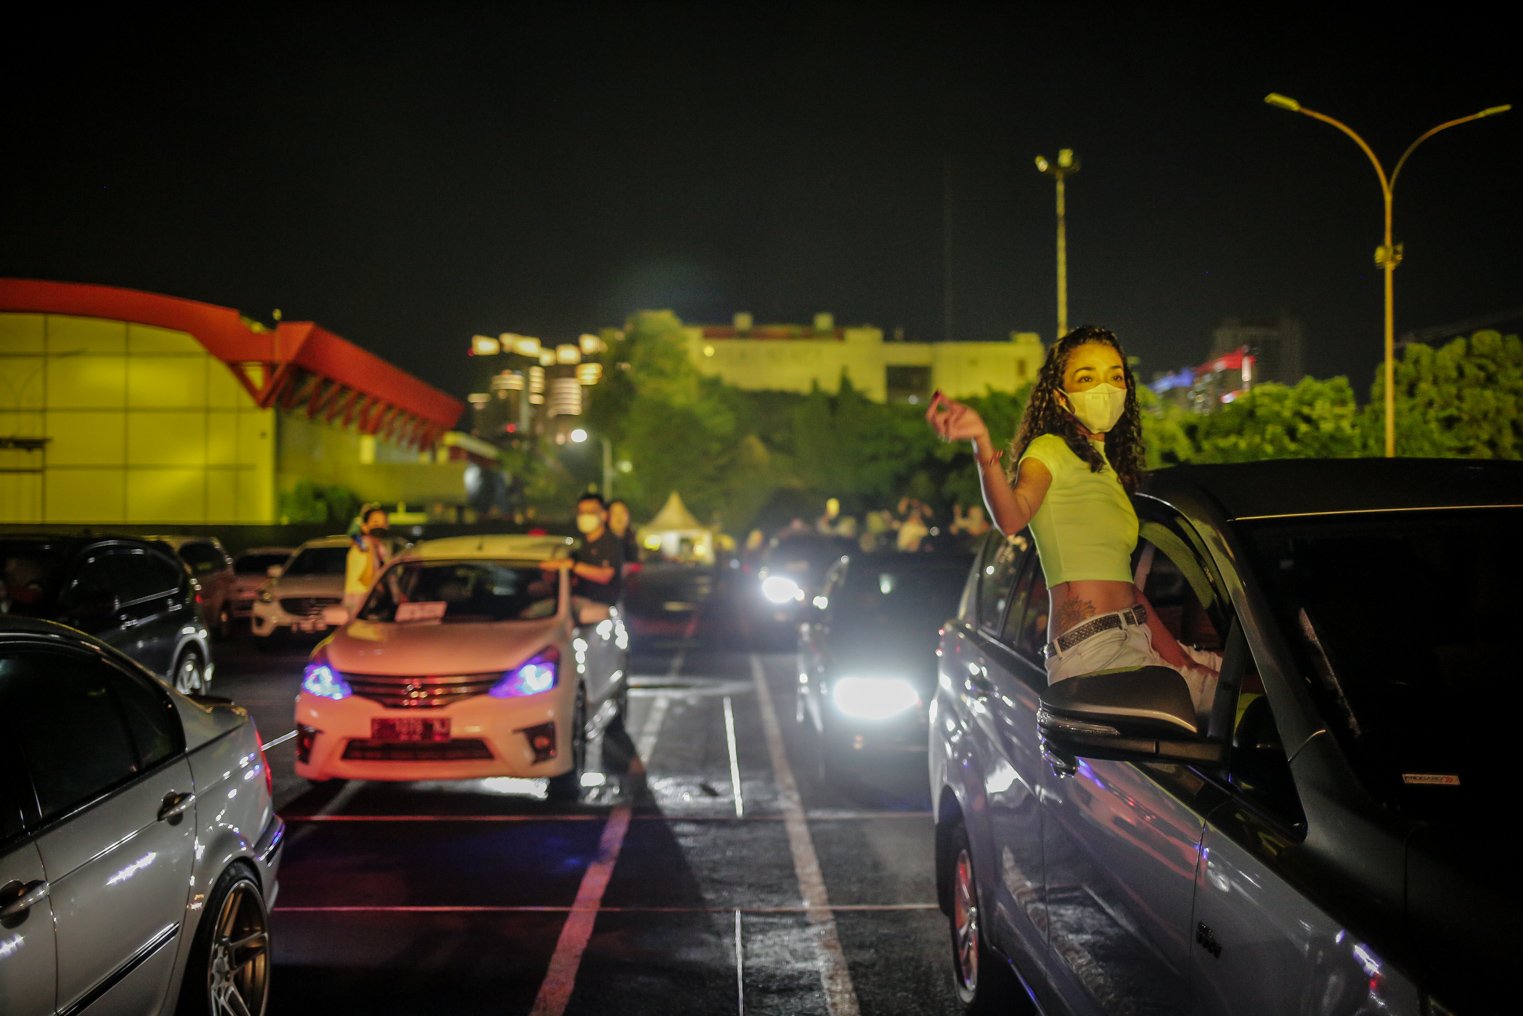 Pengunjung menikmati penampilan band NOAH dalam konser Drive-in di Parkir Barat Ji-Expo Kemayoran, Jakarta, Sabtu (20/11/2021). Konser #SafetyAndSpectacular dengan konsep Hybrid Show (Offline dan Online) ini menampilkan musisi ternama Tanah Air, seperti Bunga Citra Lestari, NOAH, dan Tulus.